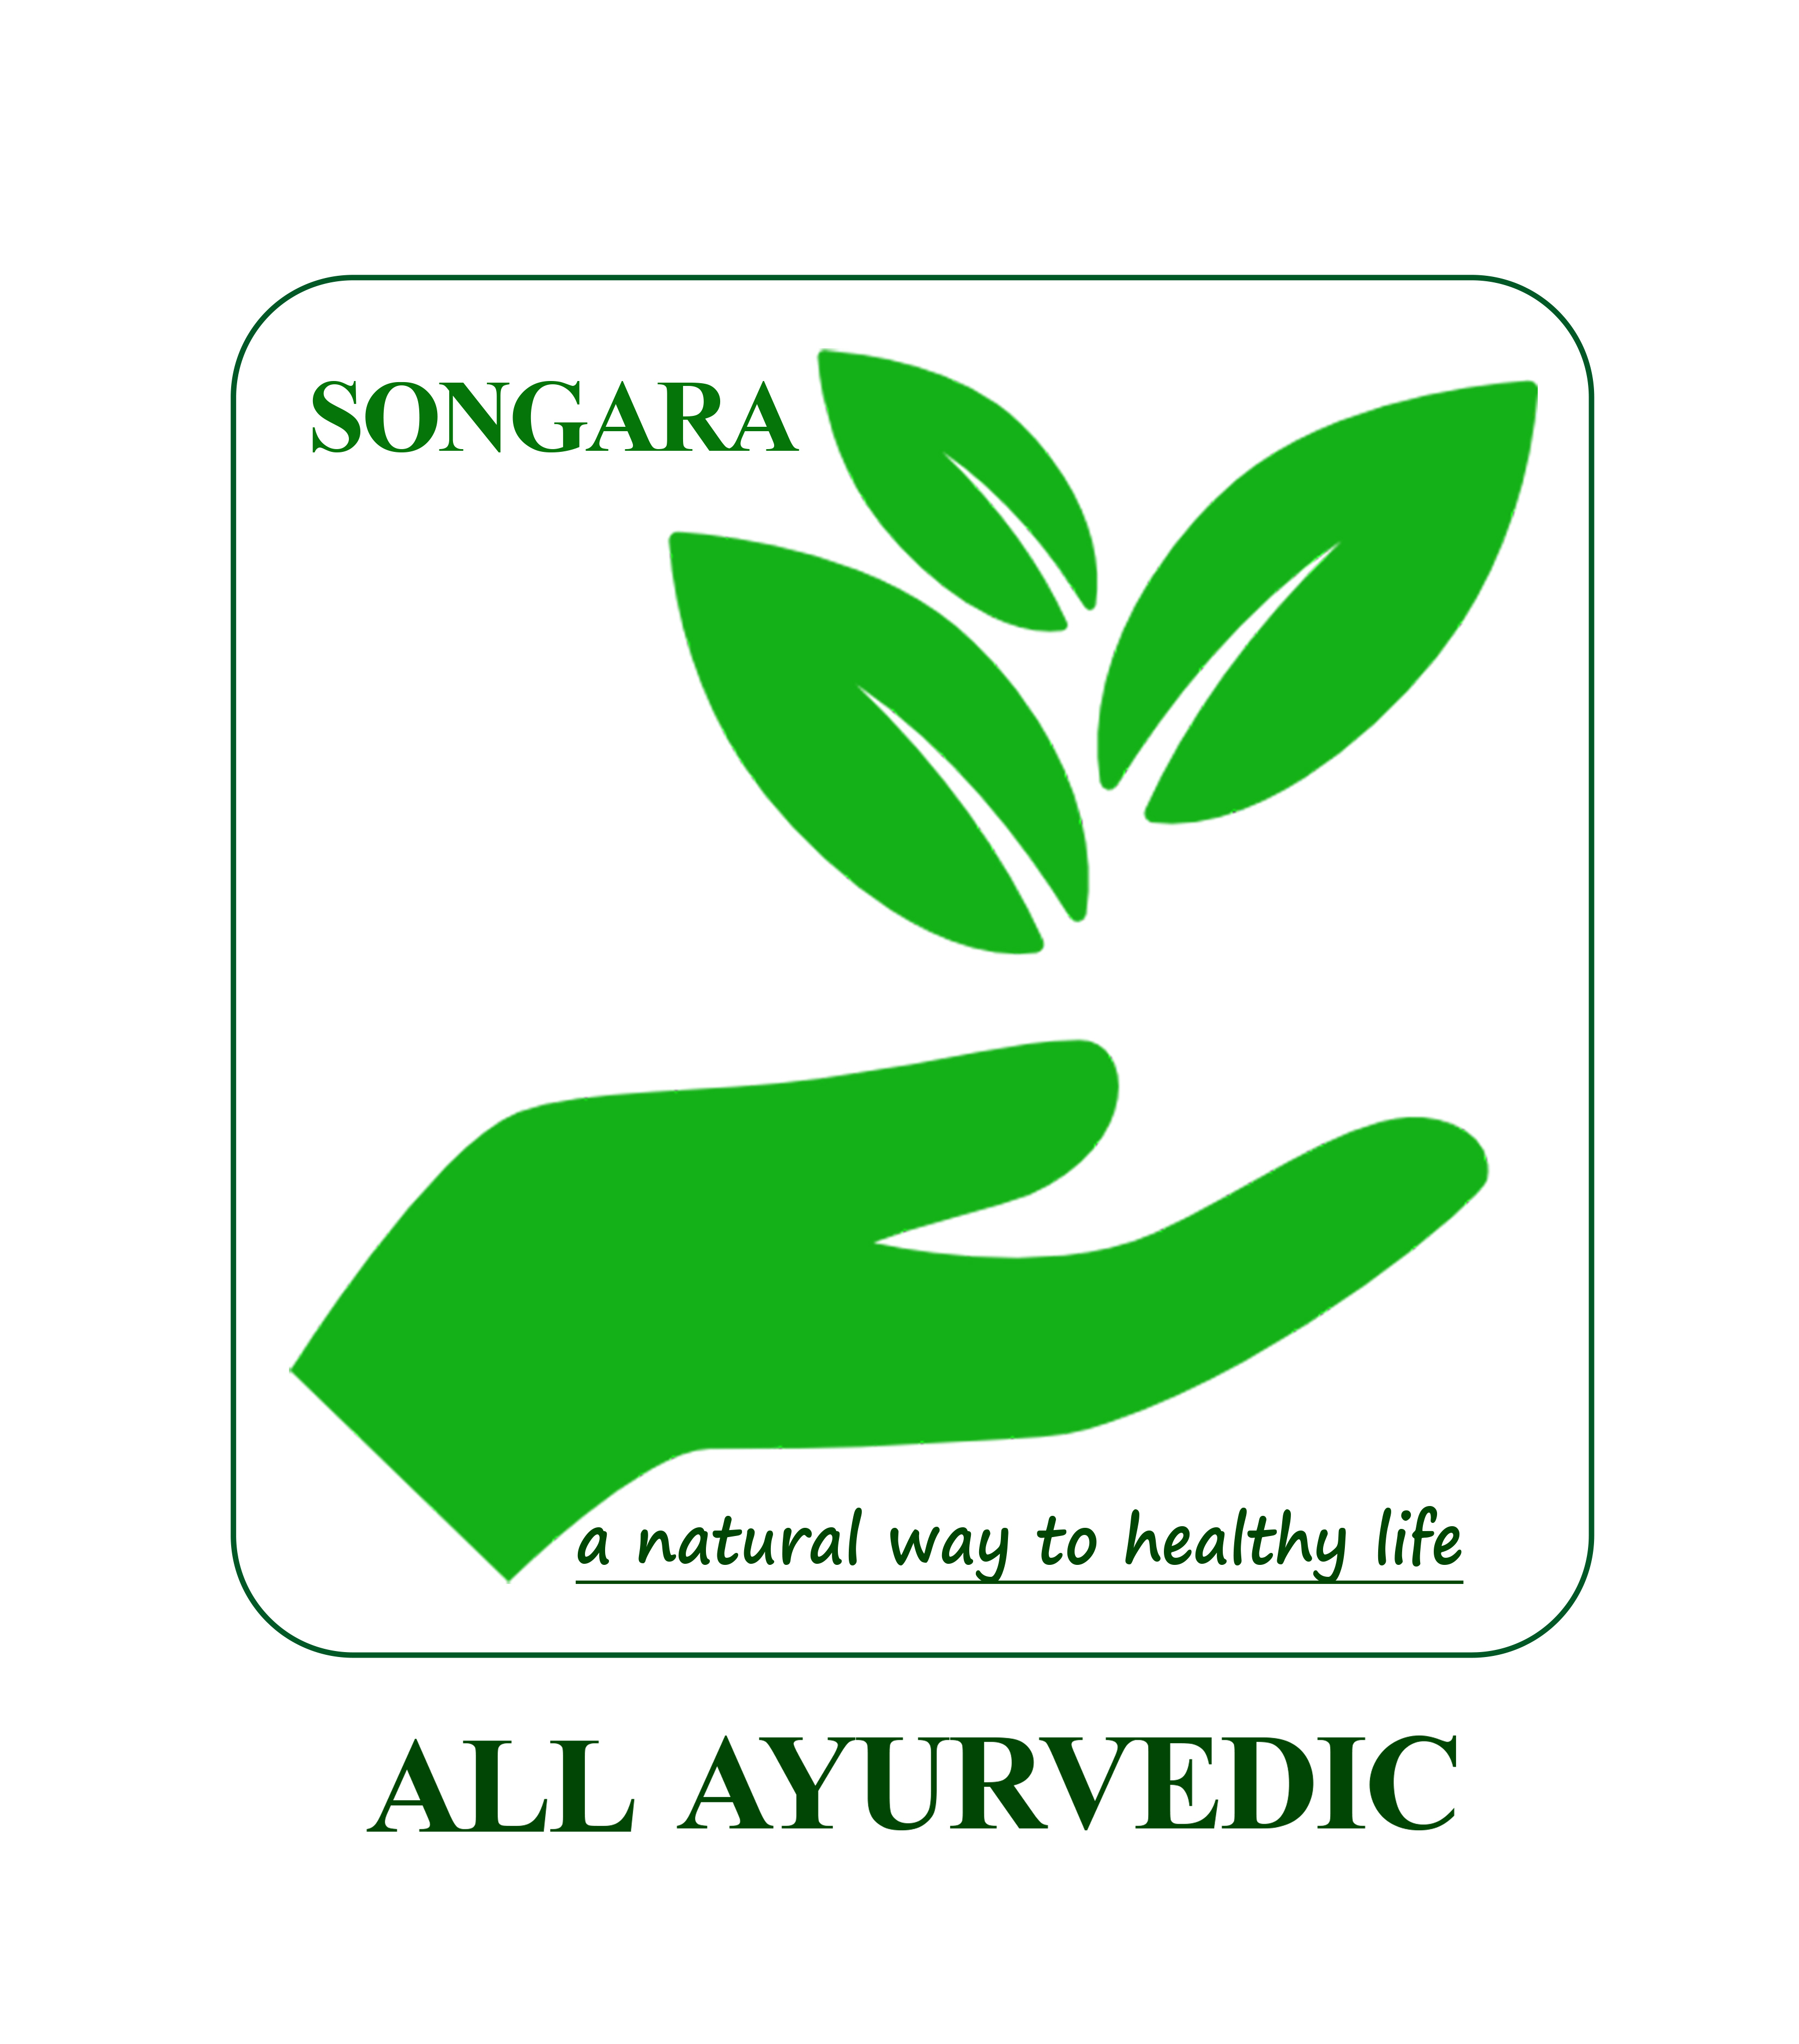 Songara All Ayurvedic: Ayurvedic Third Party Manufacturing in India